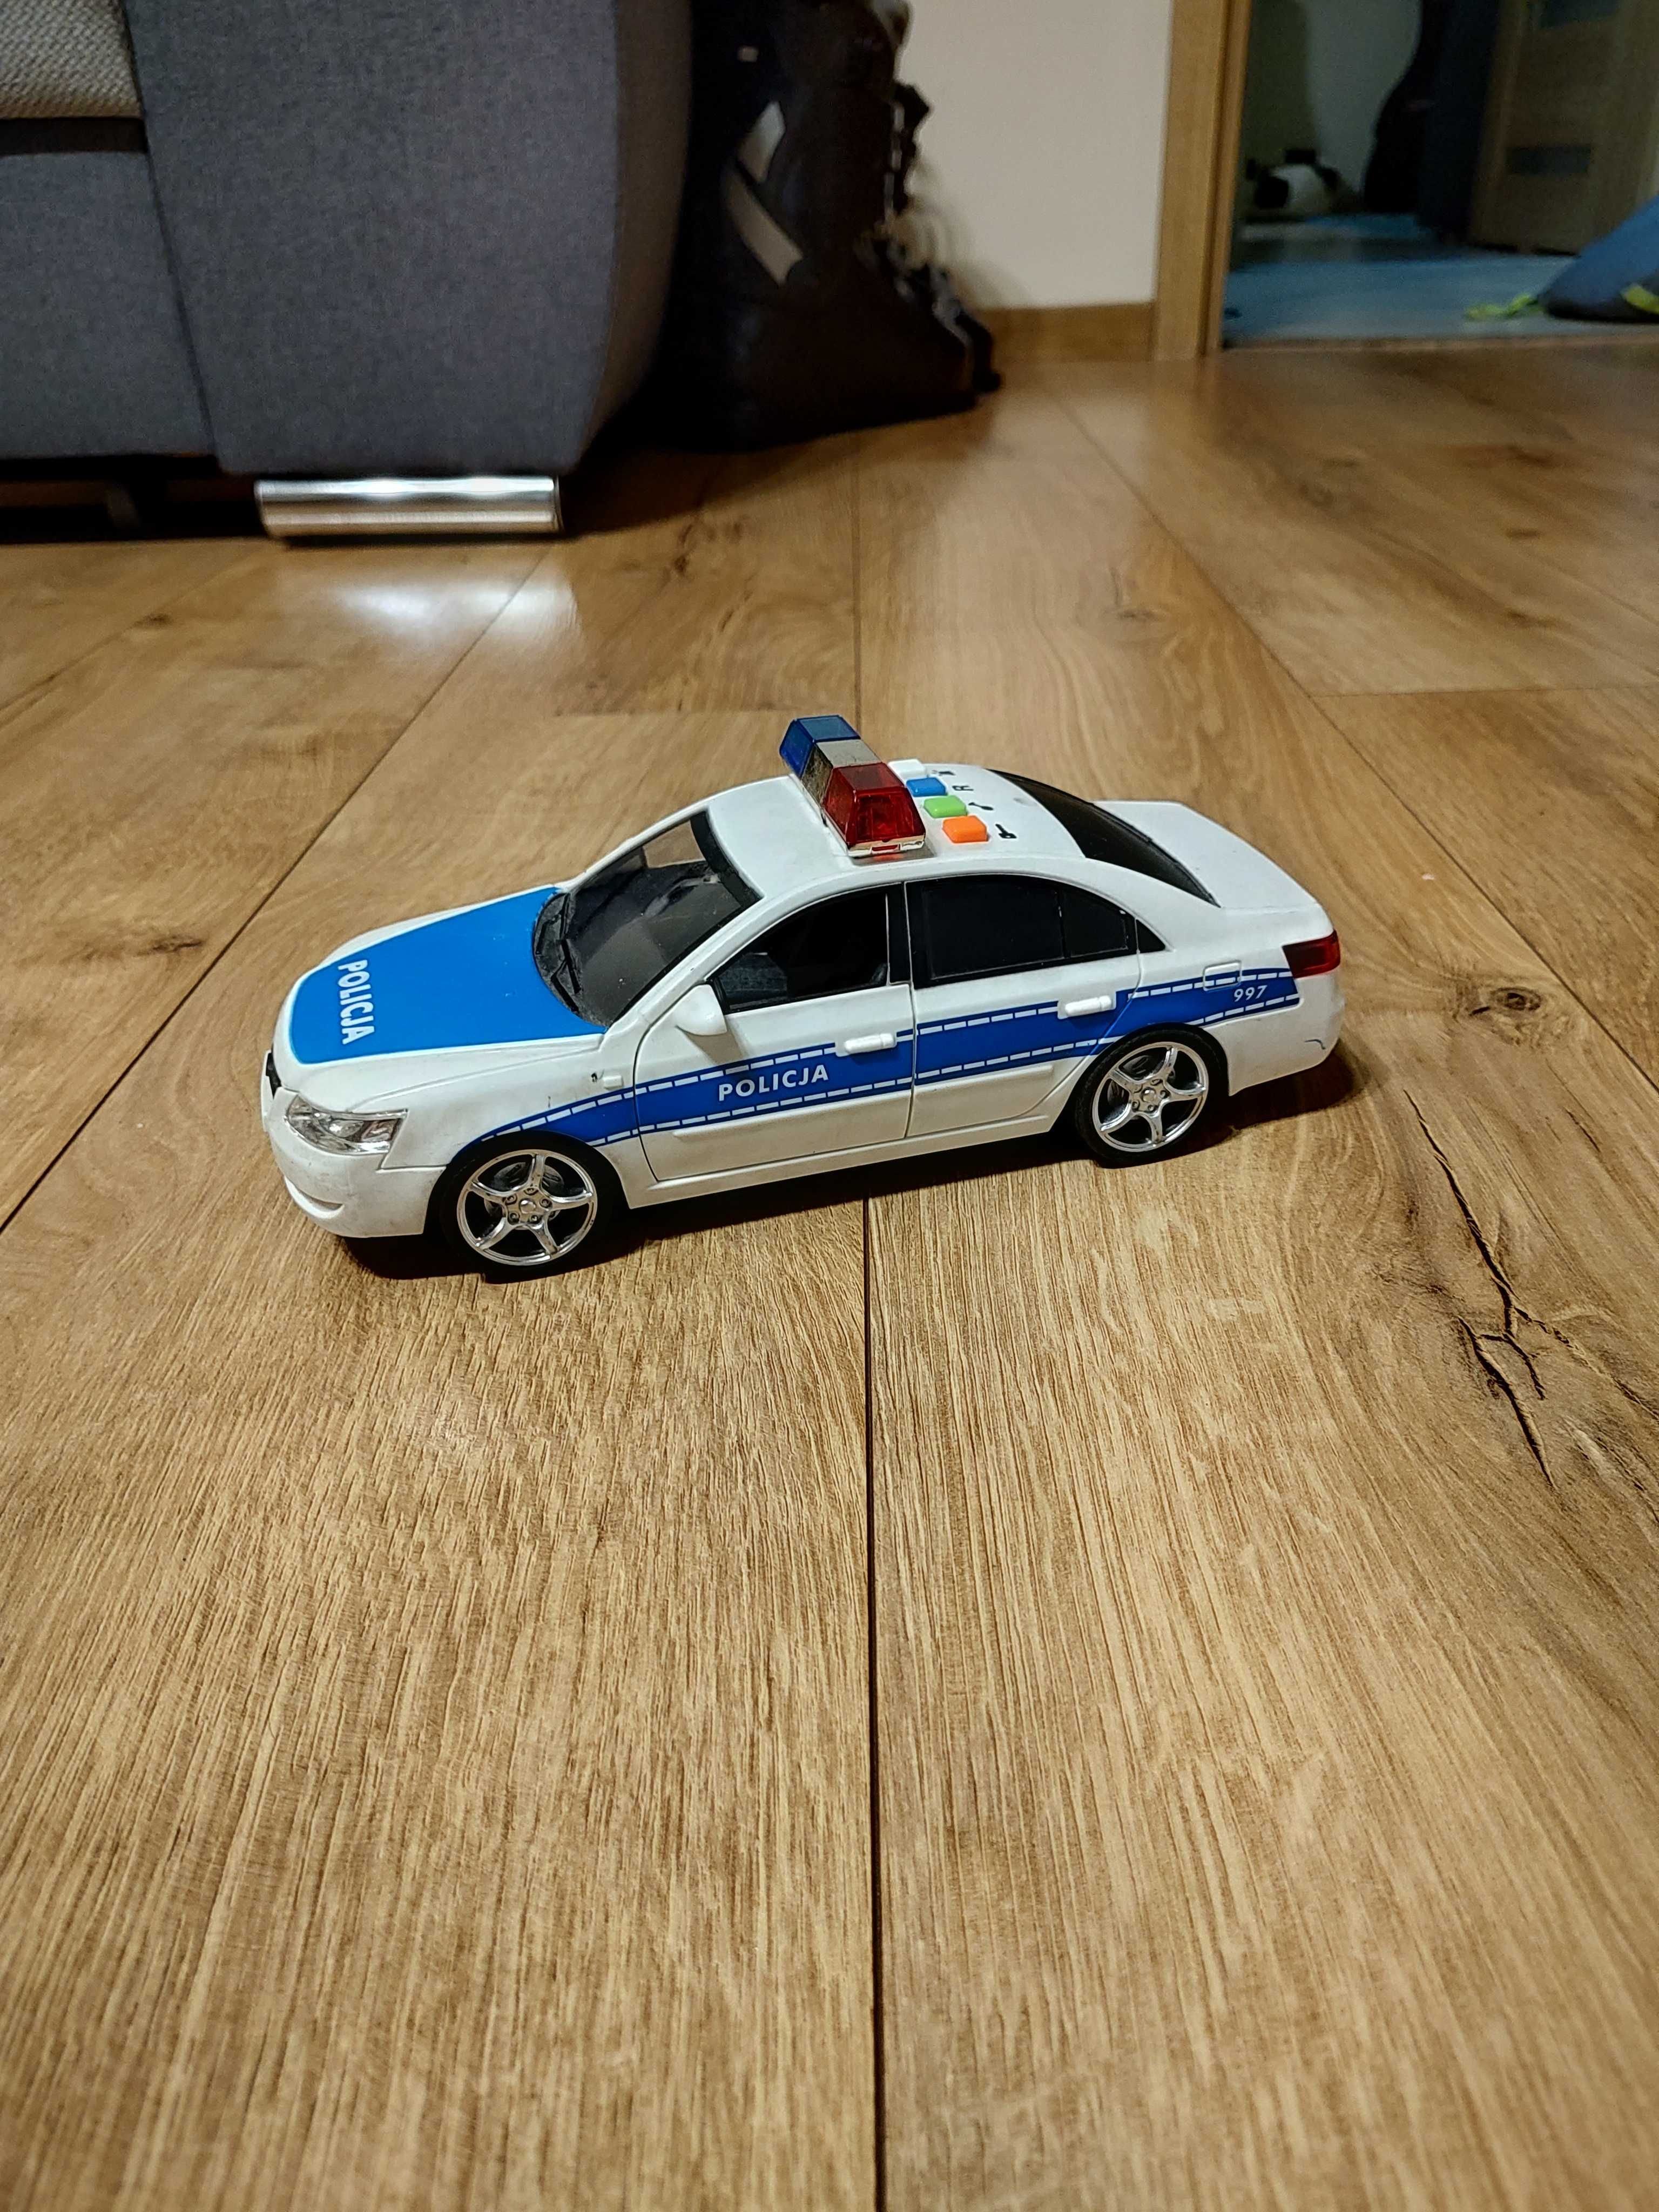 Policja samochód - otwierane drzwi